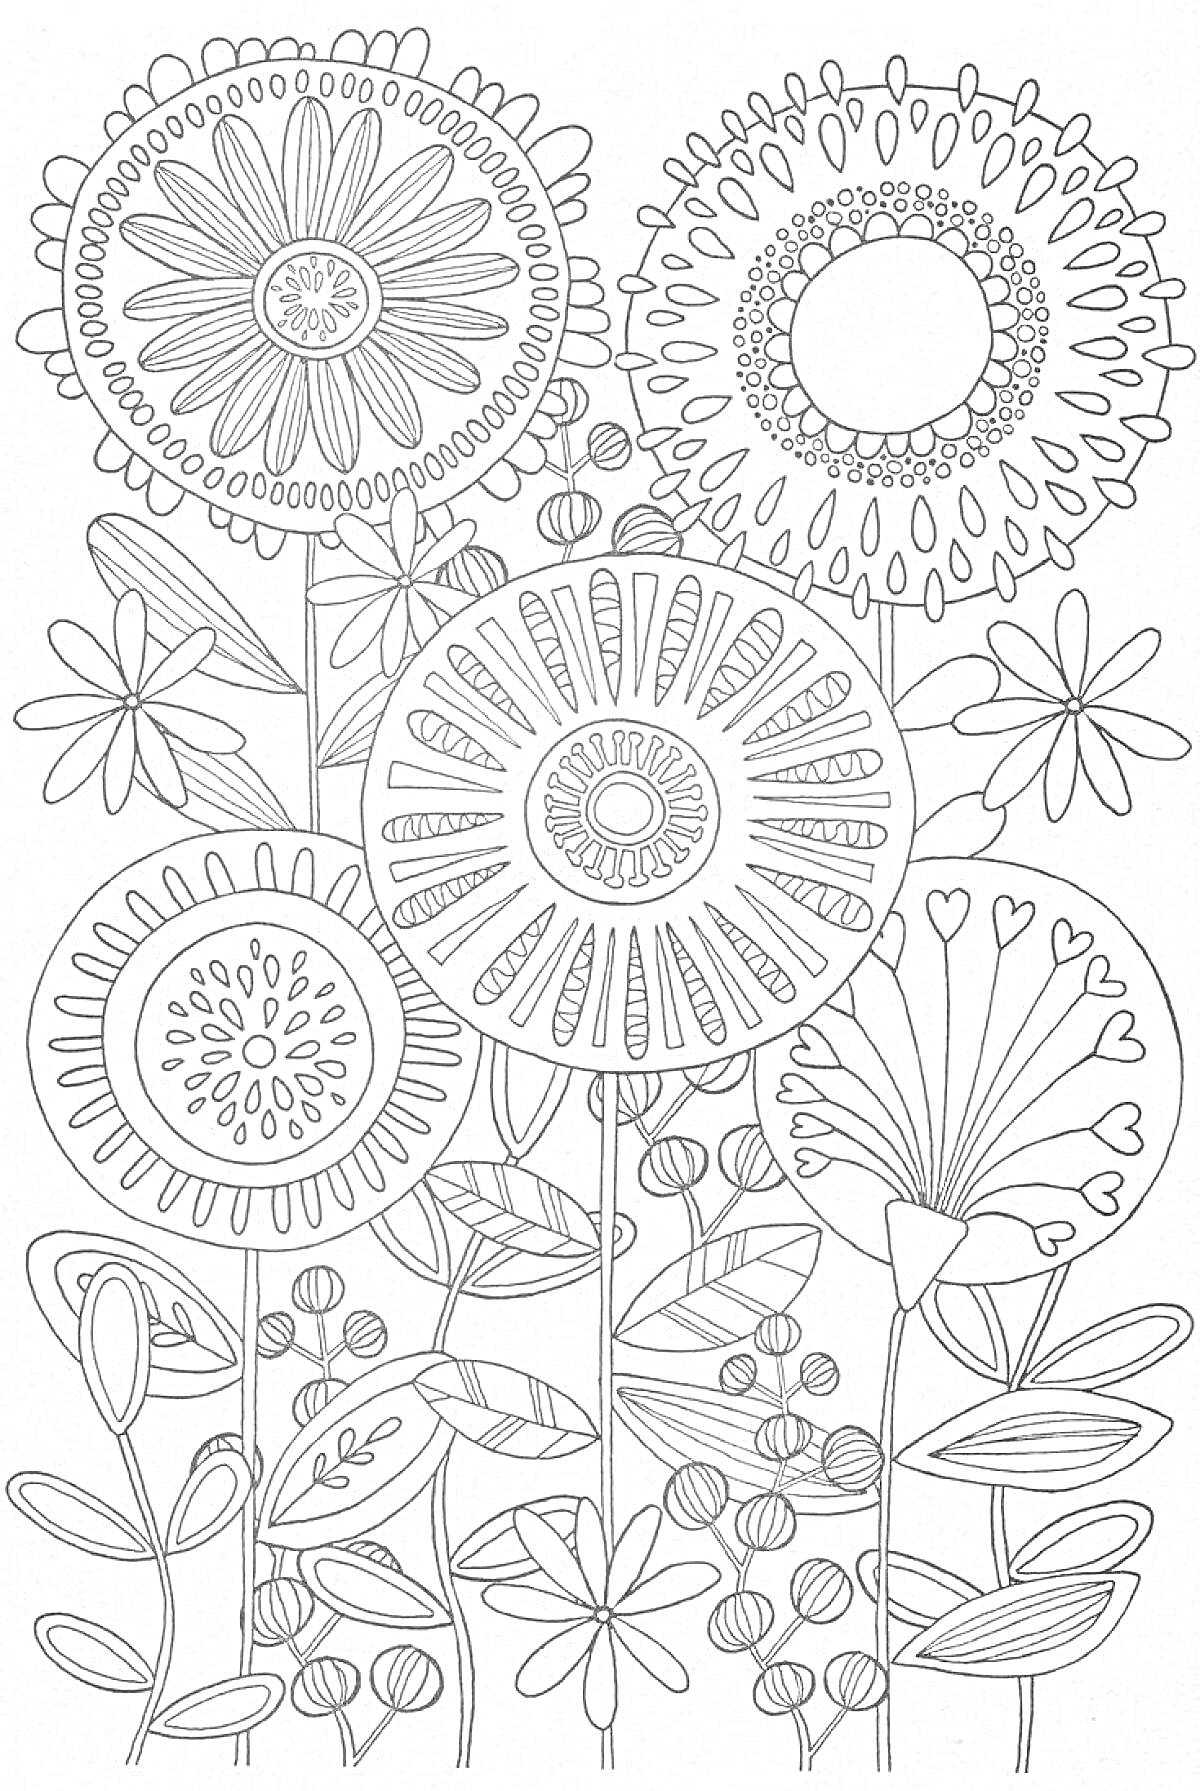 Раскраска Цветы и узоры антистресс: крупные цветы в центре, маленькие цветы по бокам, листья, ветки и абстрактные узоры